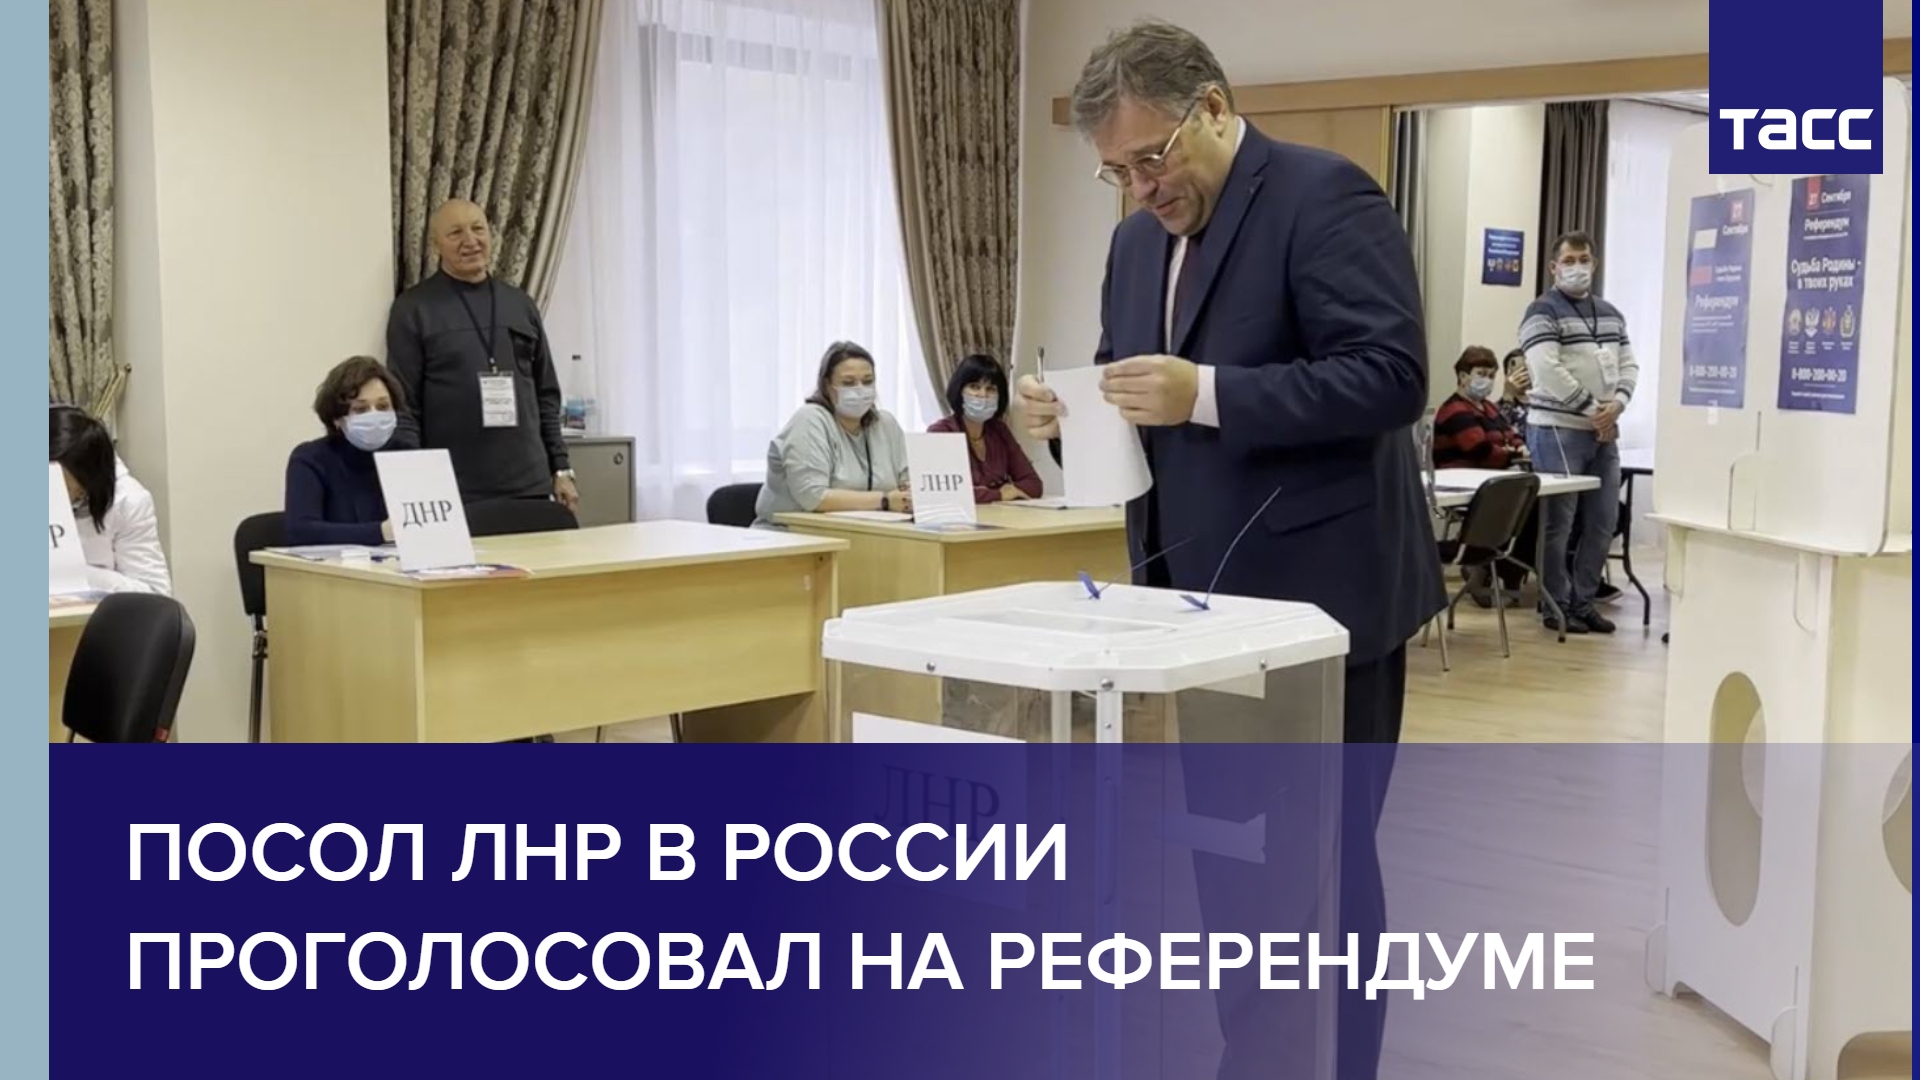 Посол ЛНР в России проголосовал на референдуме #shorts